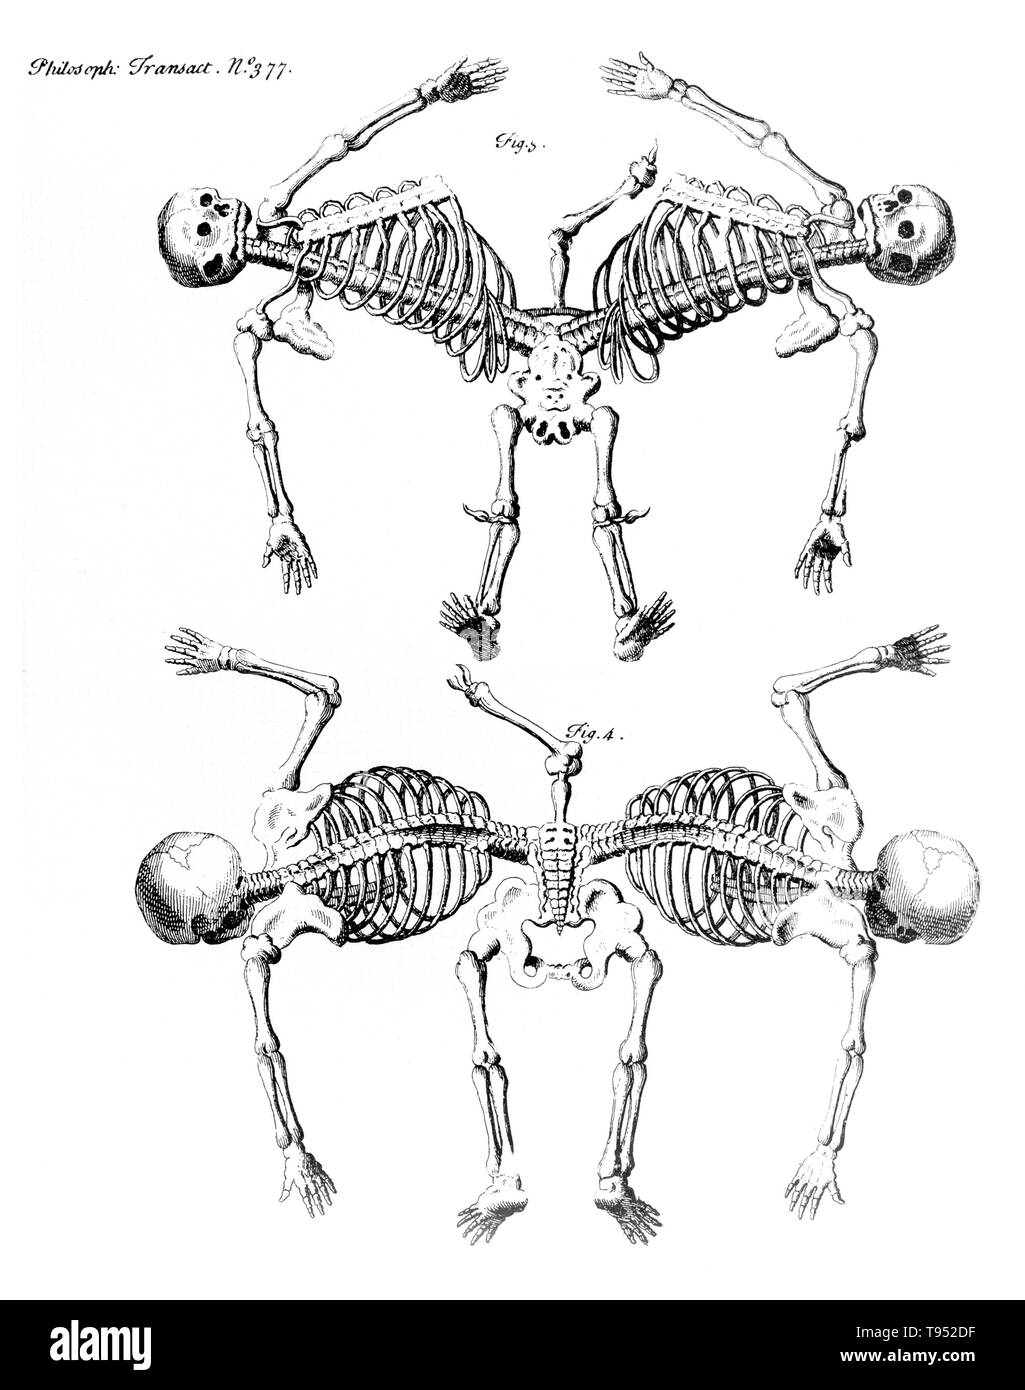 Gemelos siameses son gemelos idénticos nacidos con sus cuerpos unidos en algún punto y tienen diversos grados de duplicación residual, resultado de la división incompleta del óvulo a partir de la cual los gemelos desarrollados. Ischiopagus gemelos se han fundido la mitad inferior de los dos órganos, con espinas conjuntada de extremo-a-extremo en un ángulo de 180 grados. Estos gemelos tienen cuatro brazos; dos, tres o cuatro patas; y normalmente un conjunto externo de los genitales y el ano. Imagen apareció en 'Transacciones filosóficas", volumen 31-32 Número 377, Firgure 3 & 4, Publicado 1720-23. Foto de stock